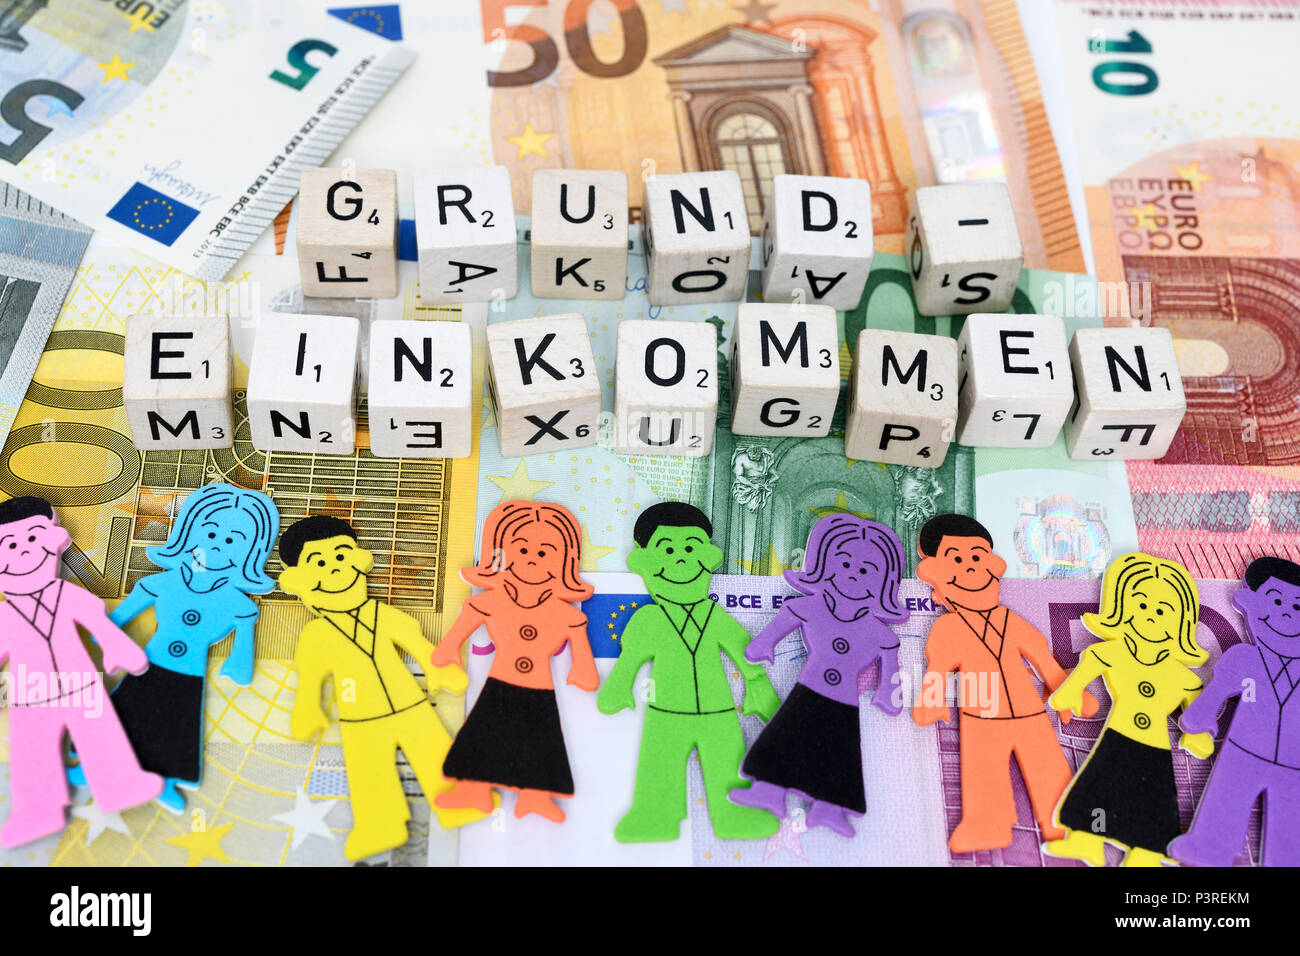 Lettera cube forma la parola reddito base sul denaro, Buchstabenwürfel formen das Wort Grundeinkommen auf Geldscheinen Foto Stock